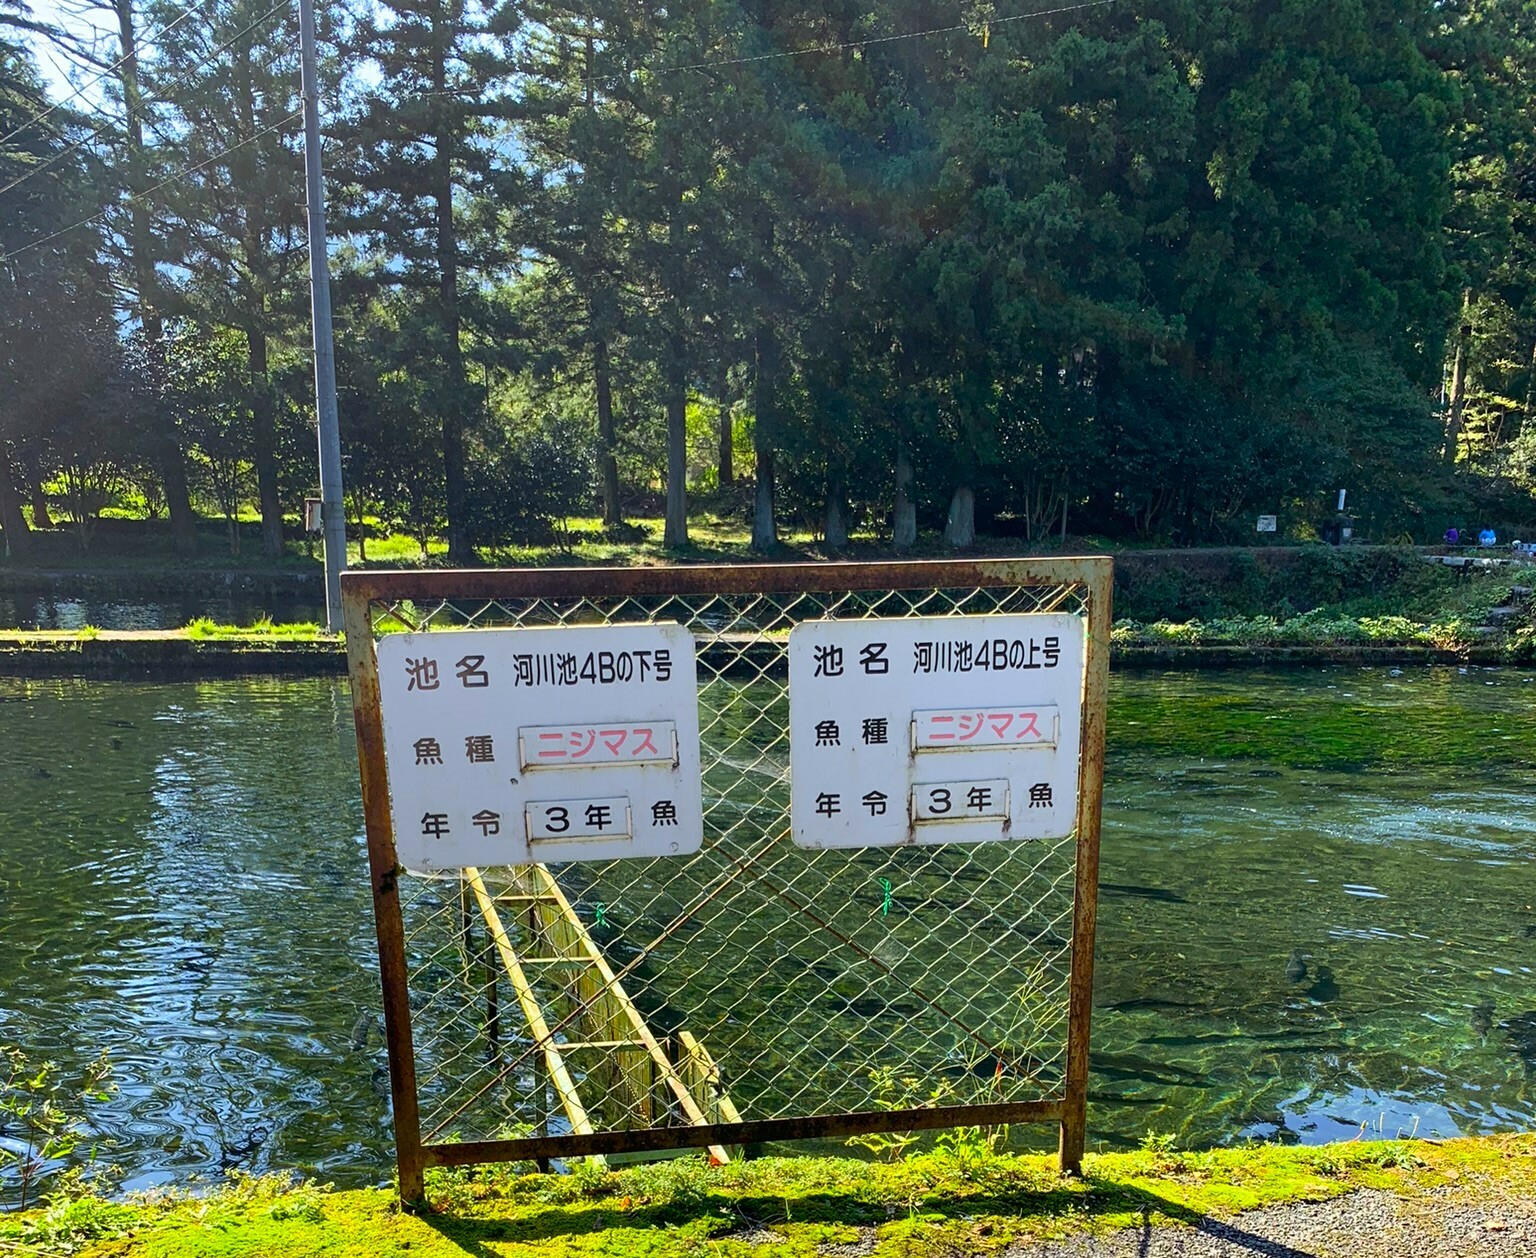 鱒池には池名と魚種、年齢が書かれた看板があります